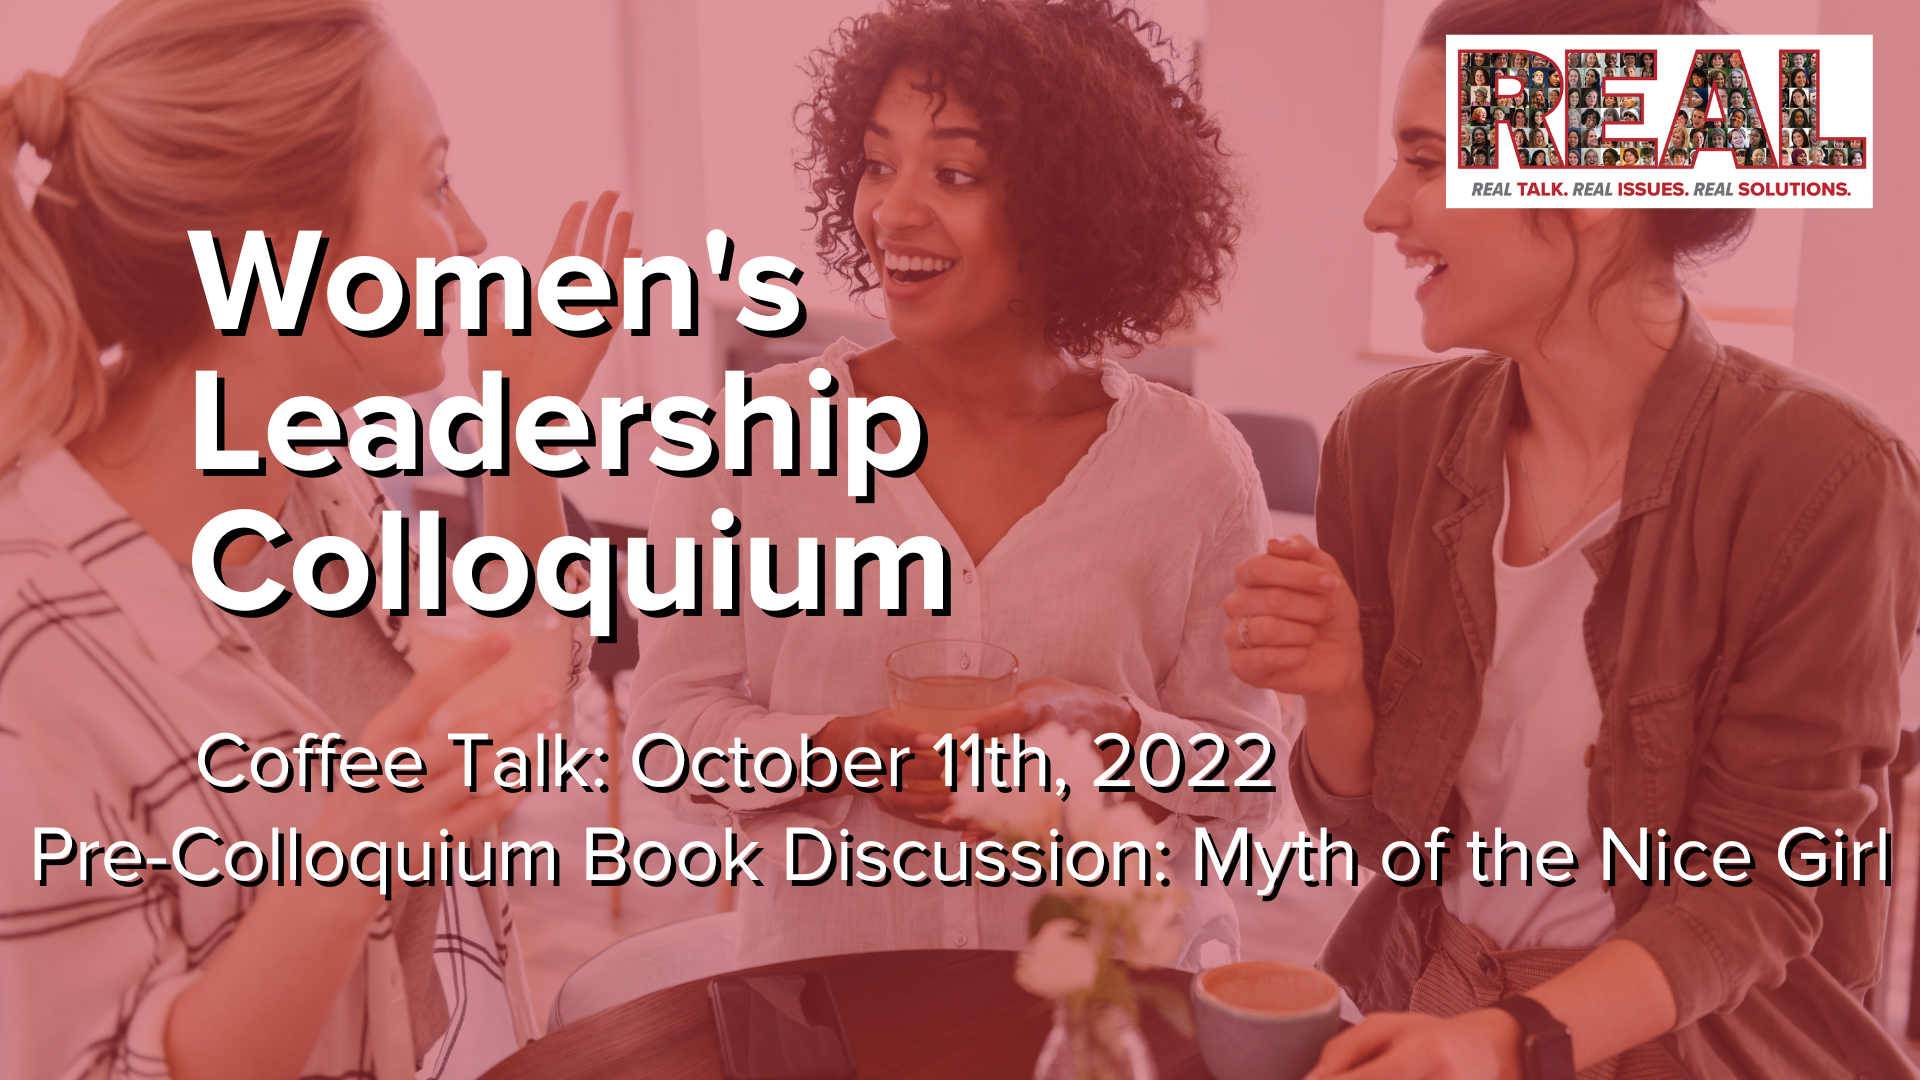 REAL Talk: UMW Women’s Colloquium